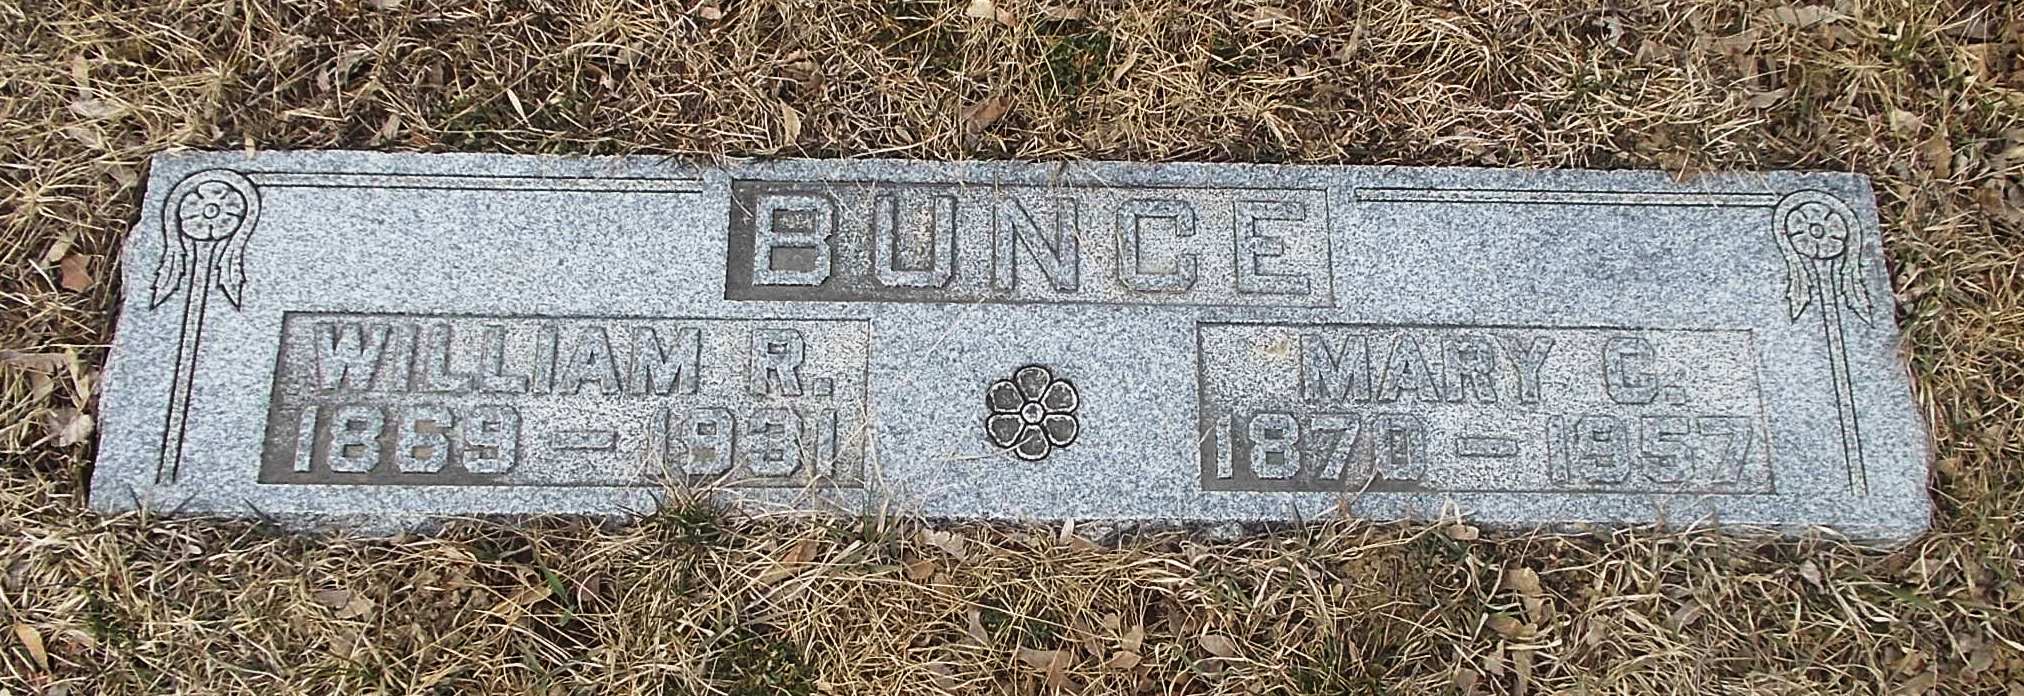 William R Bunce